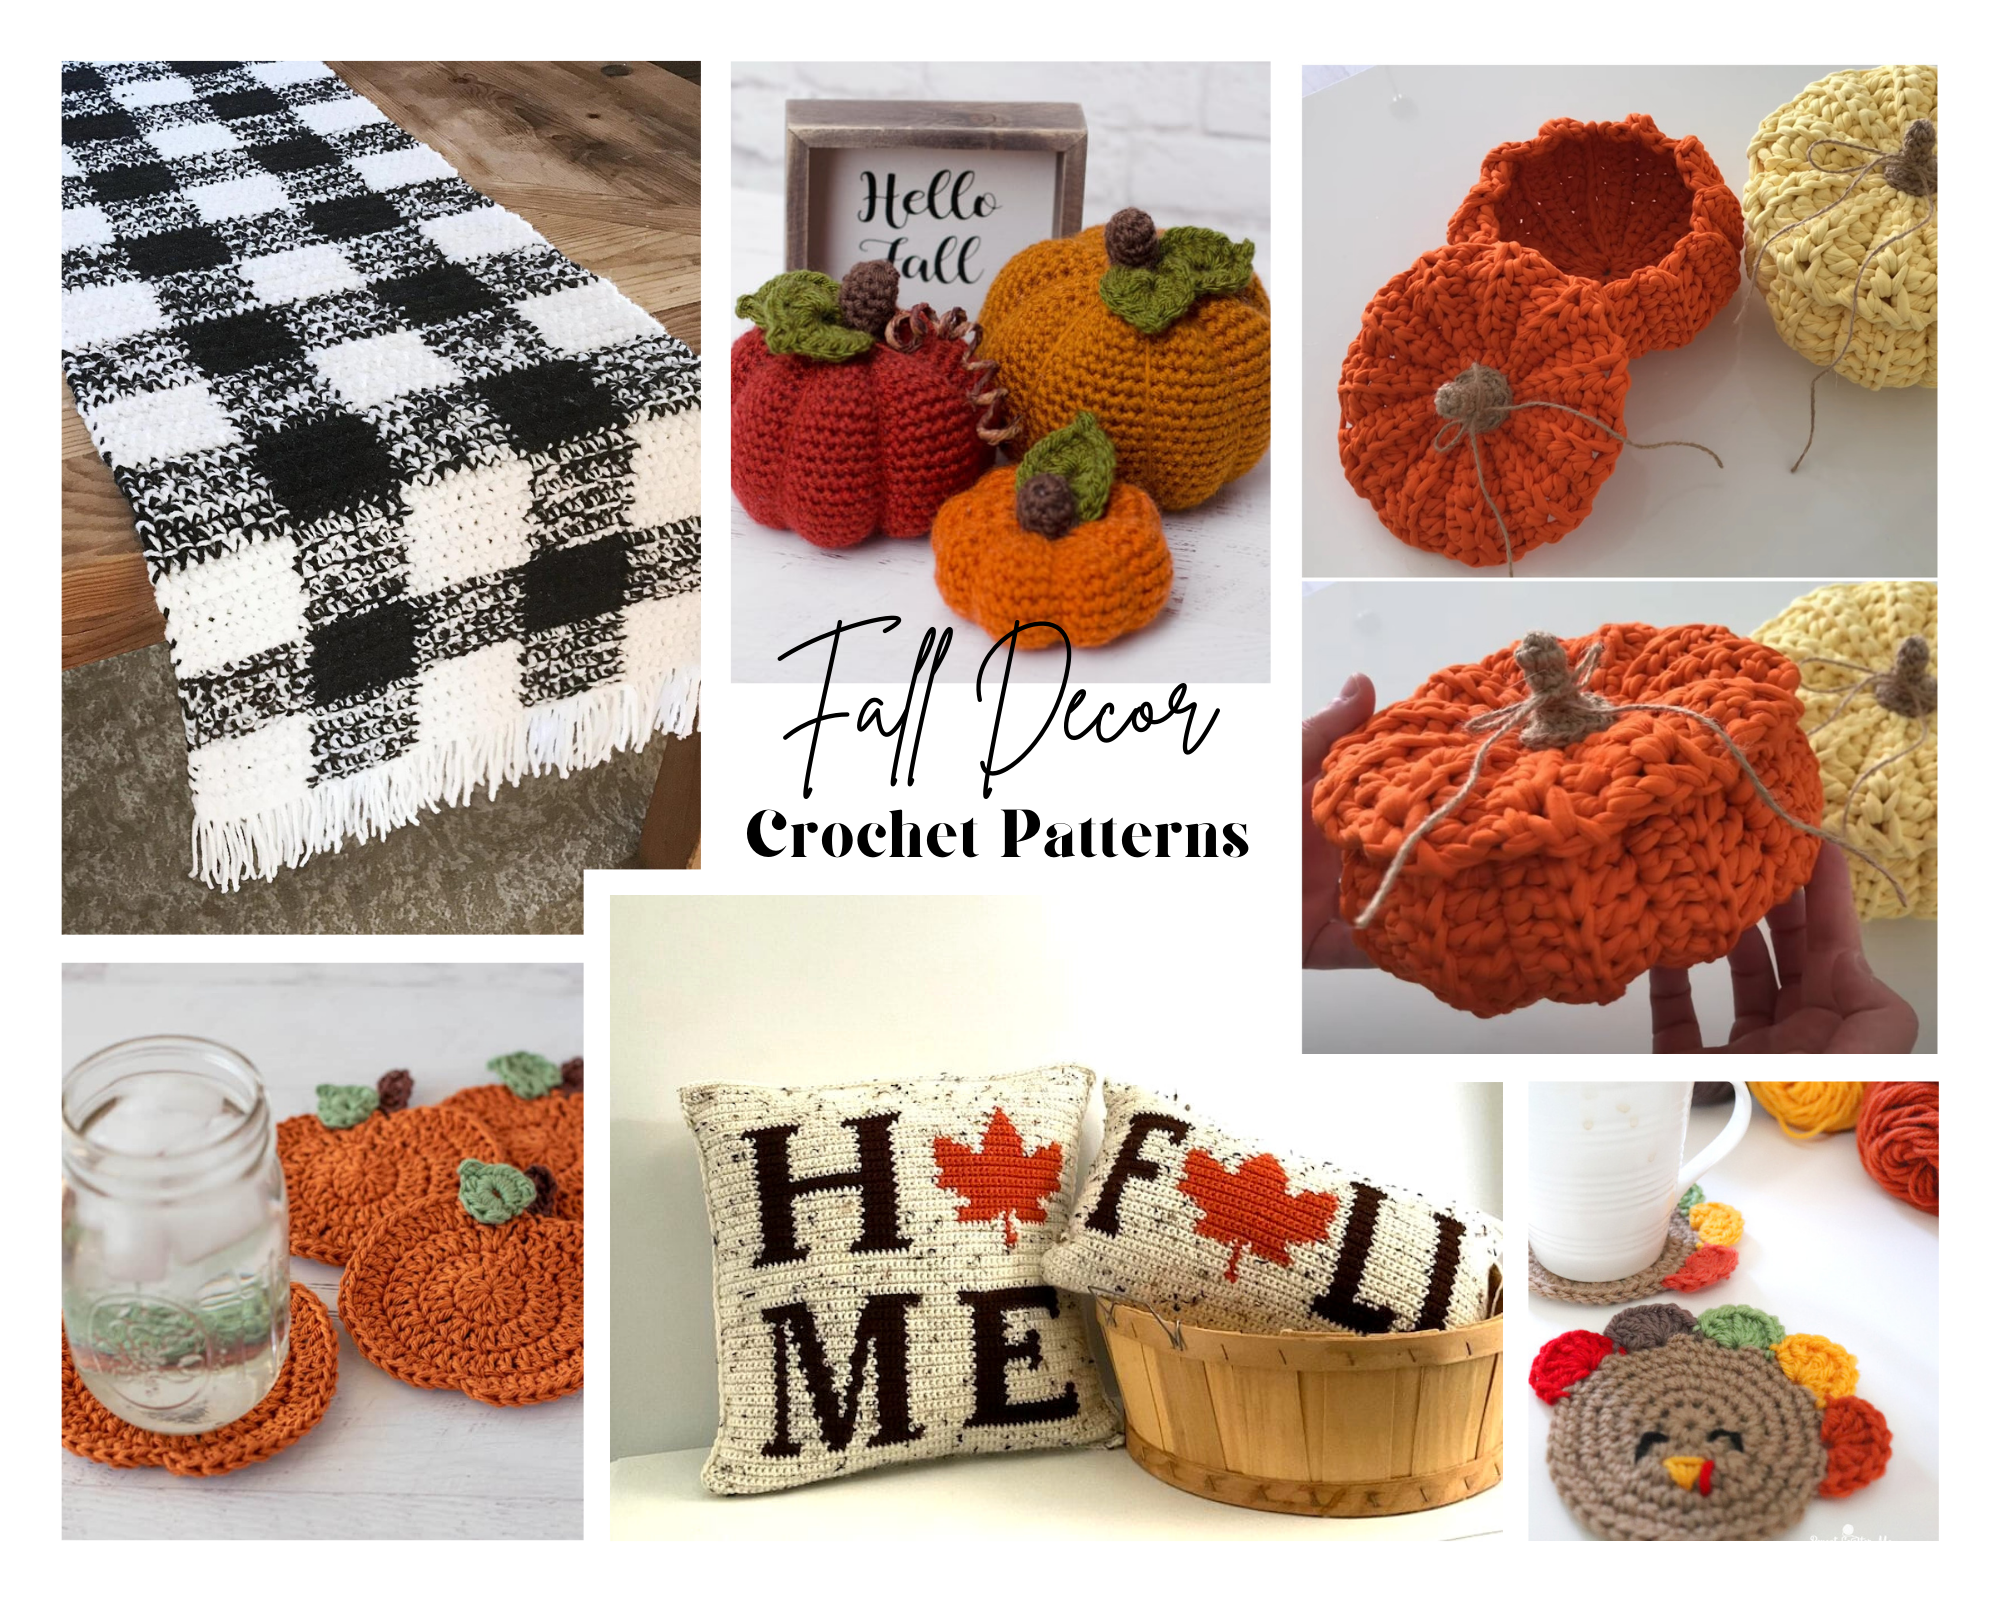 Crochet Pumpkin Wine Glass Cozy - Free Crochet Pattern - Spotted